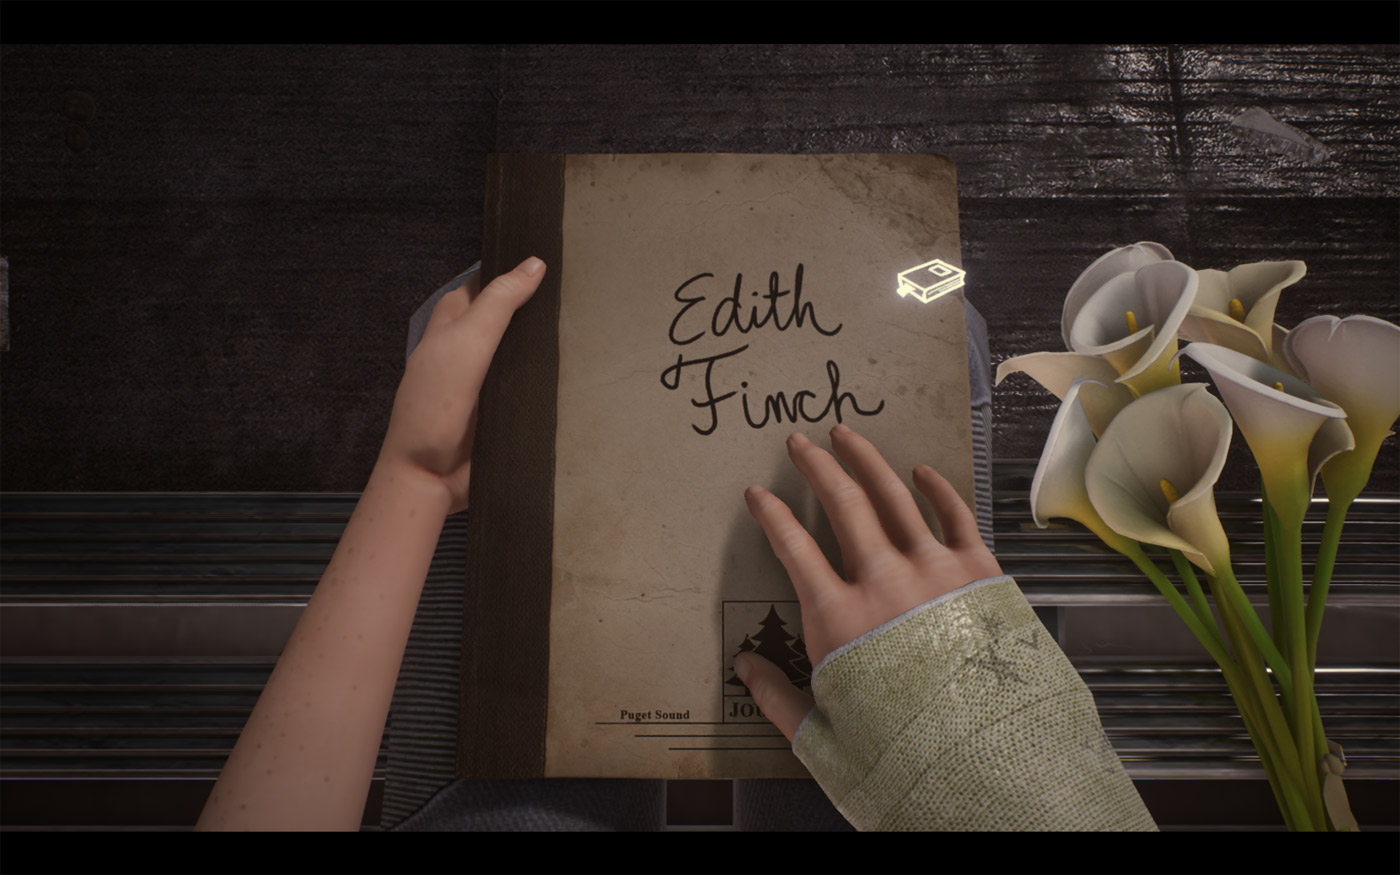 شجره نامه ای که Edith برای پسرش نوشته بود